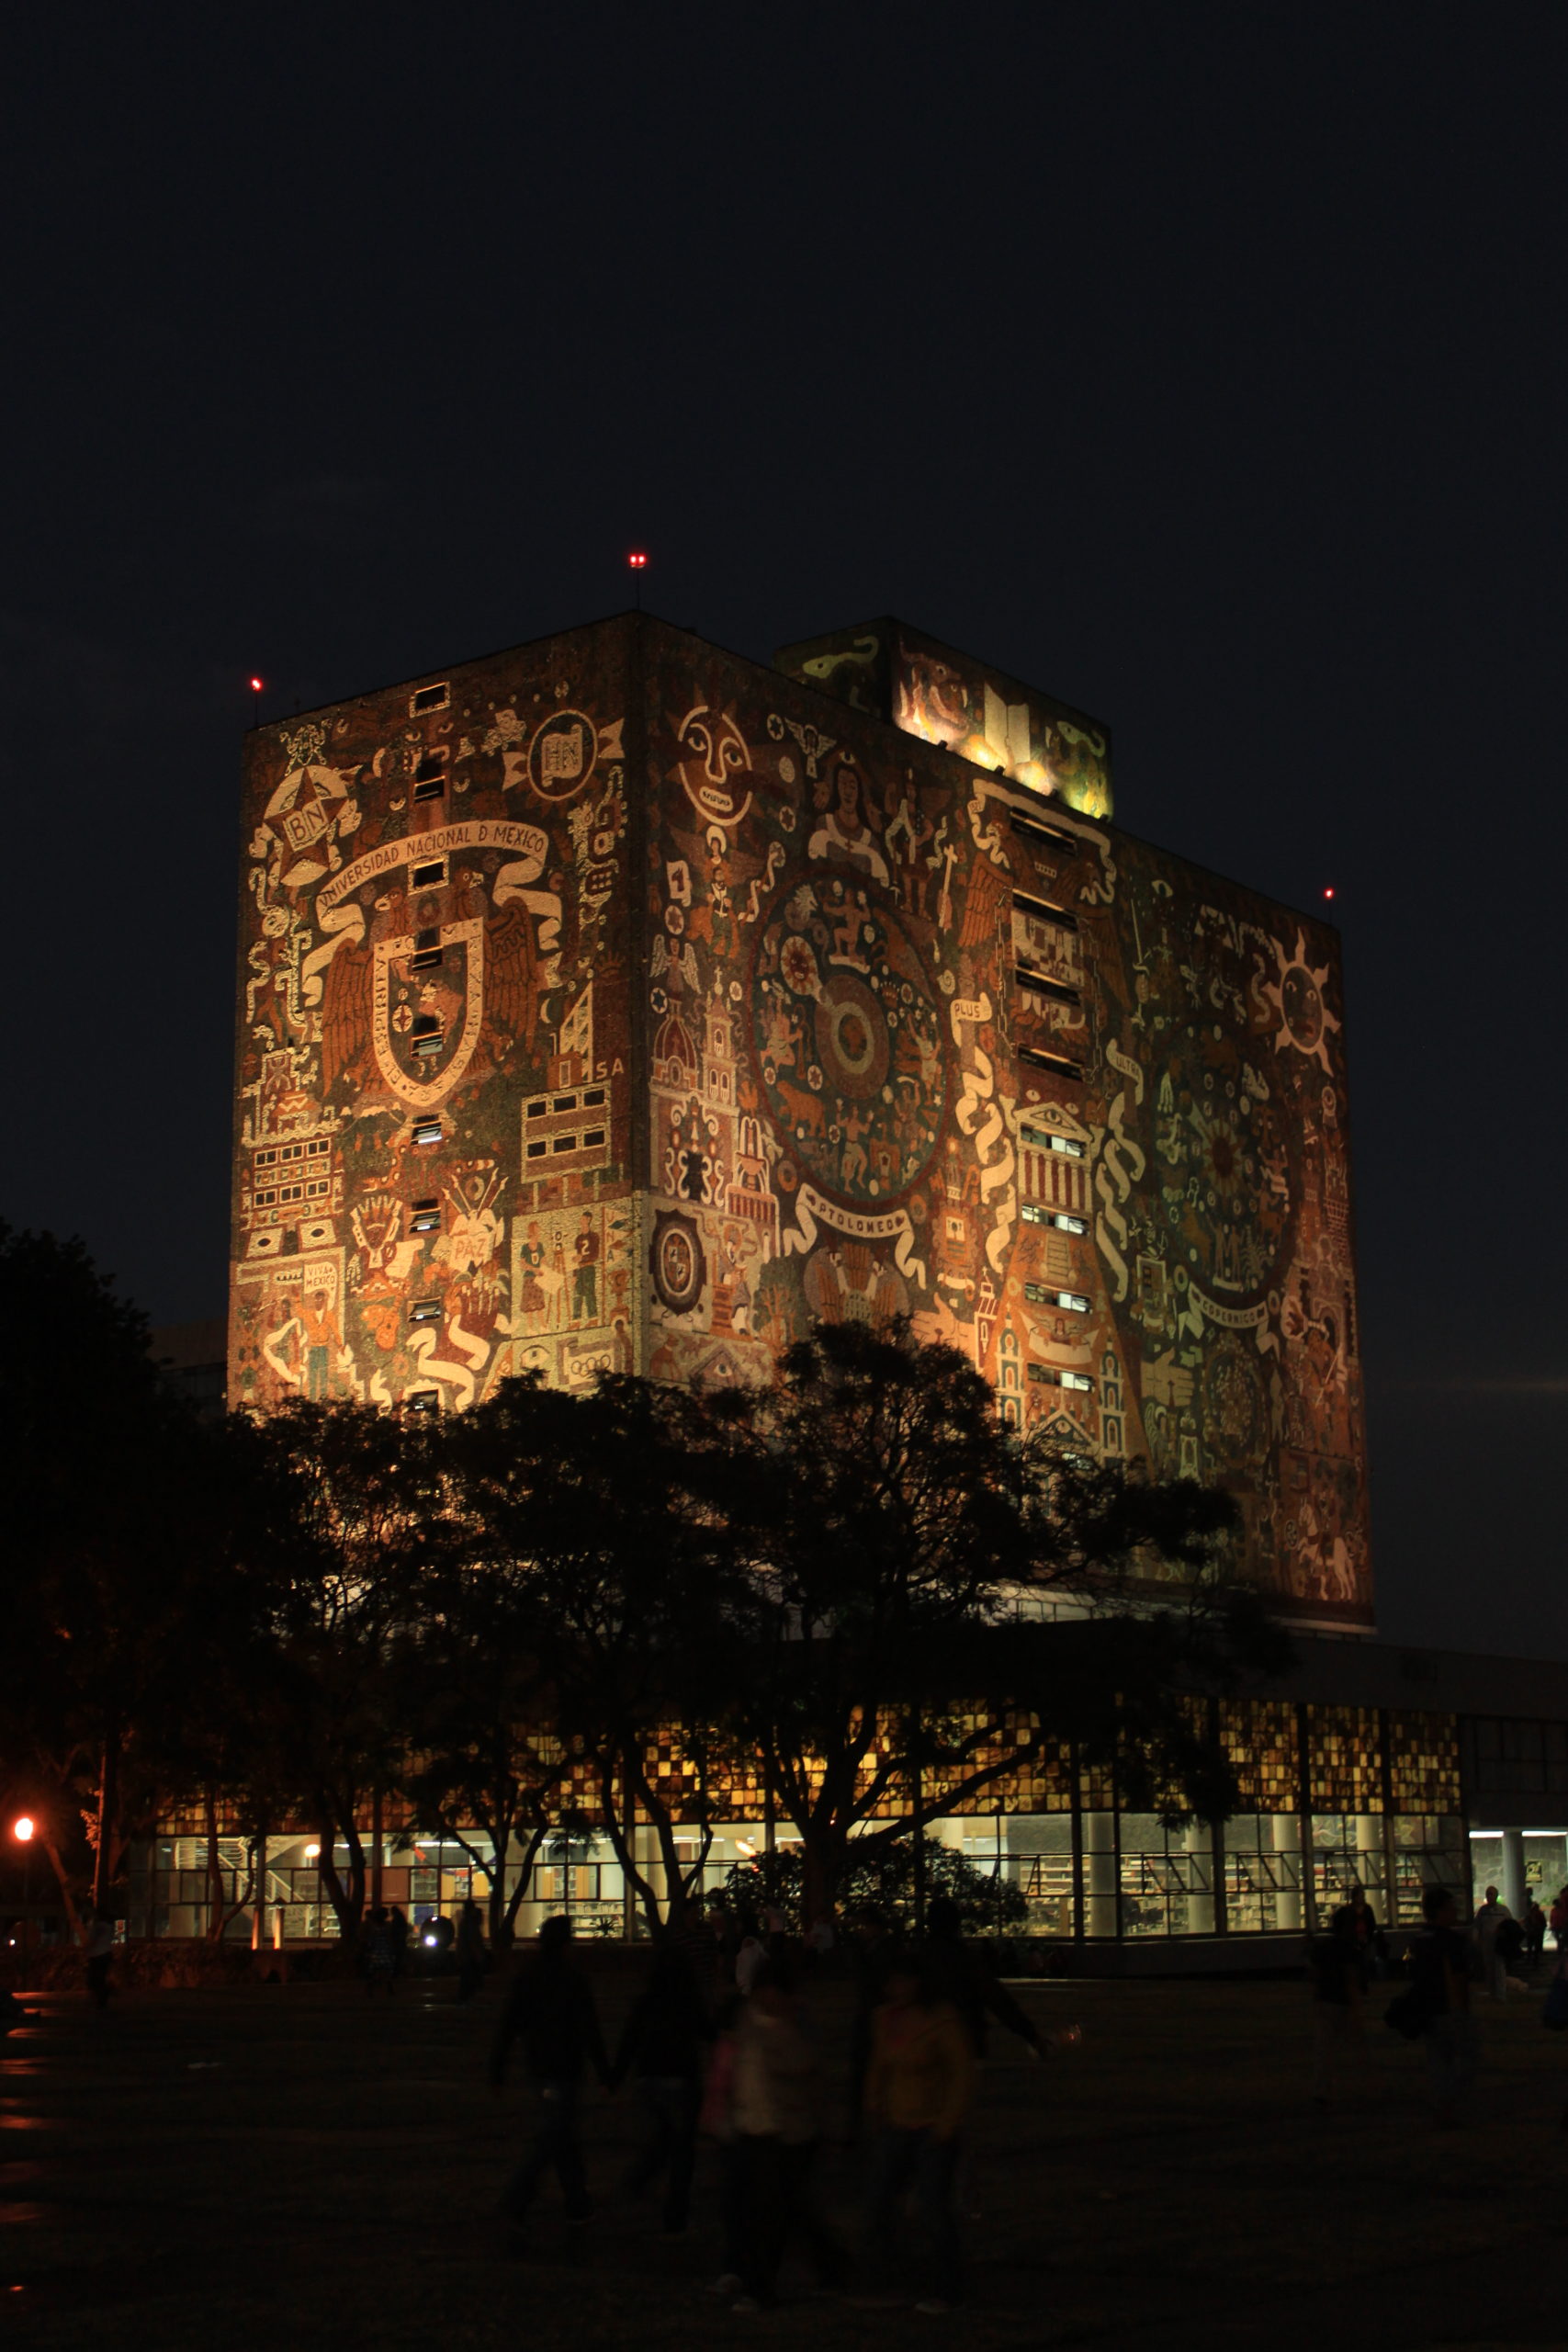 UNAM: National Autonomous University of Mexico